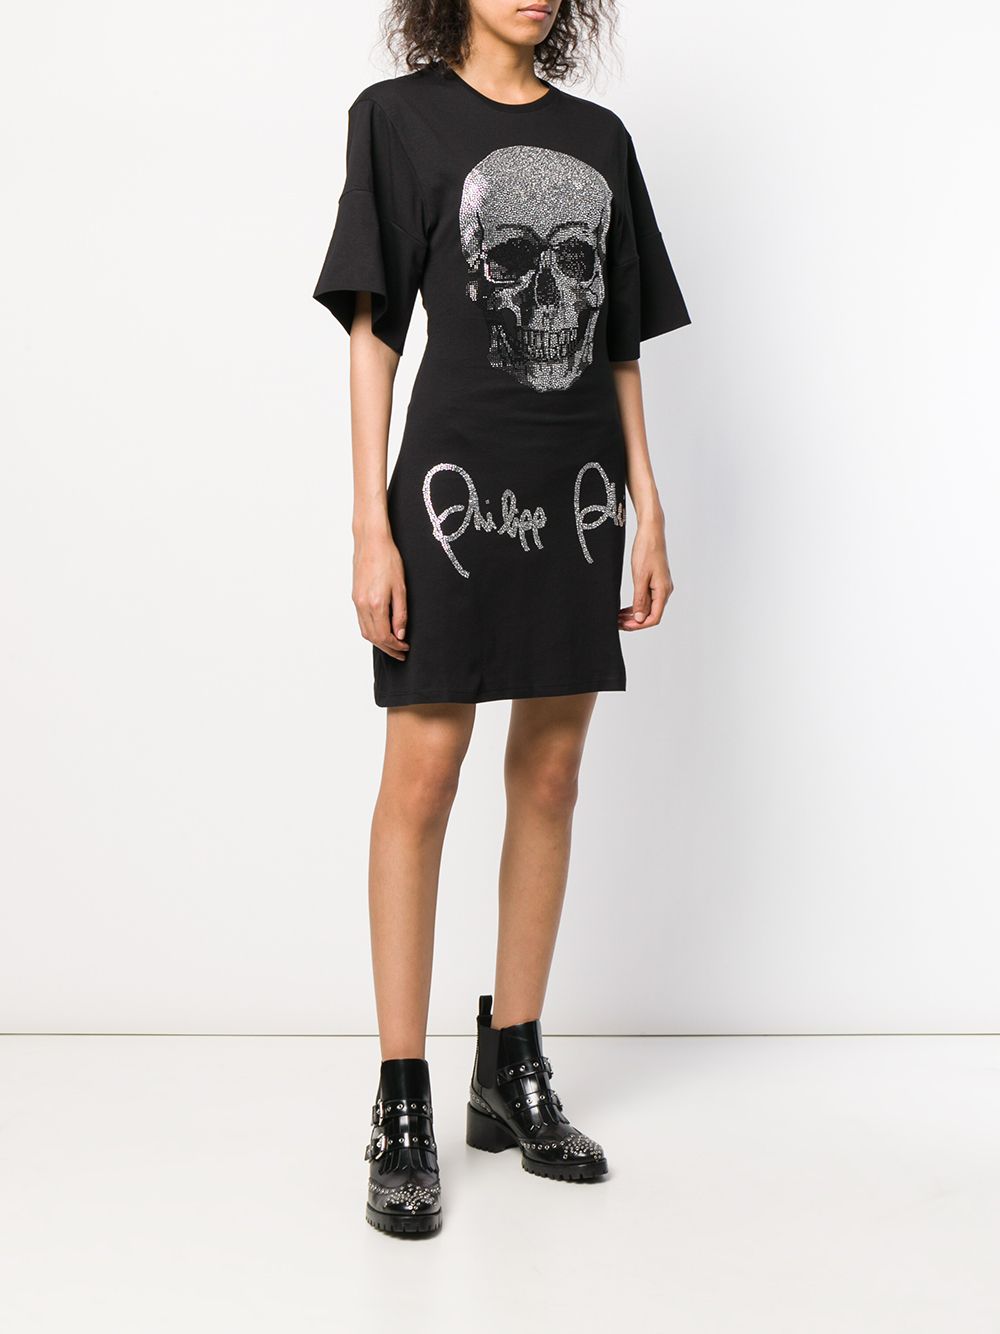 фото Philipp plein платье-футболка с короткими рукавами и декором skull